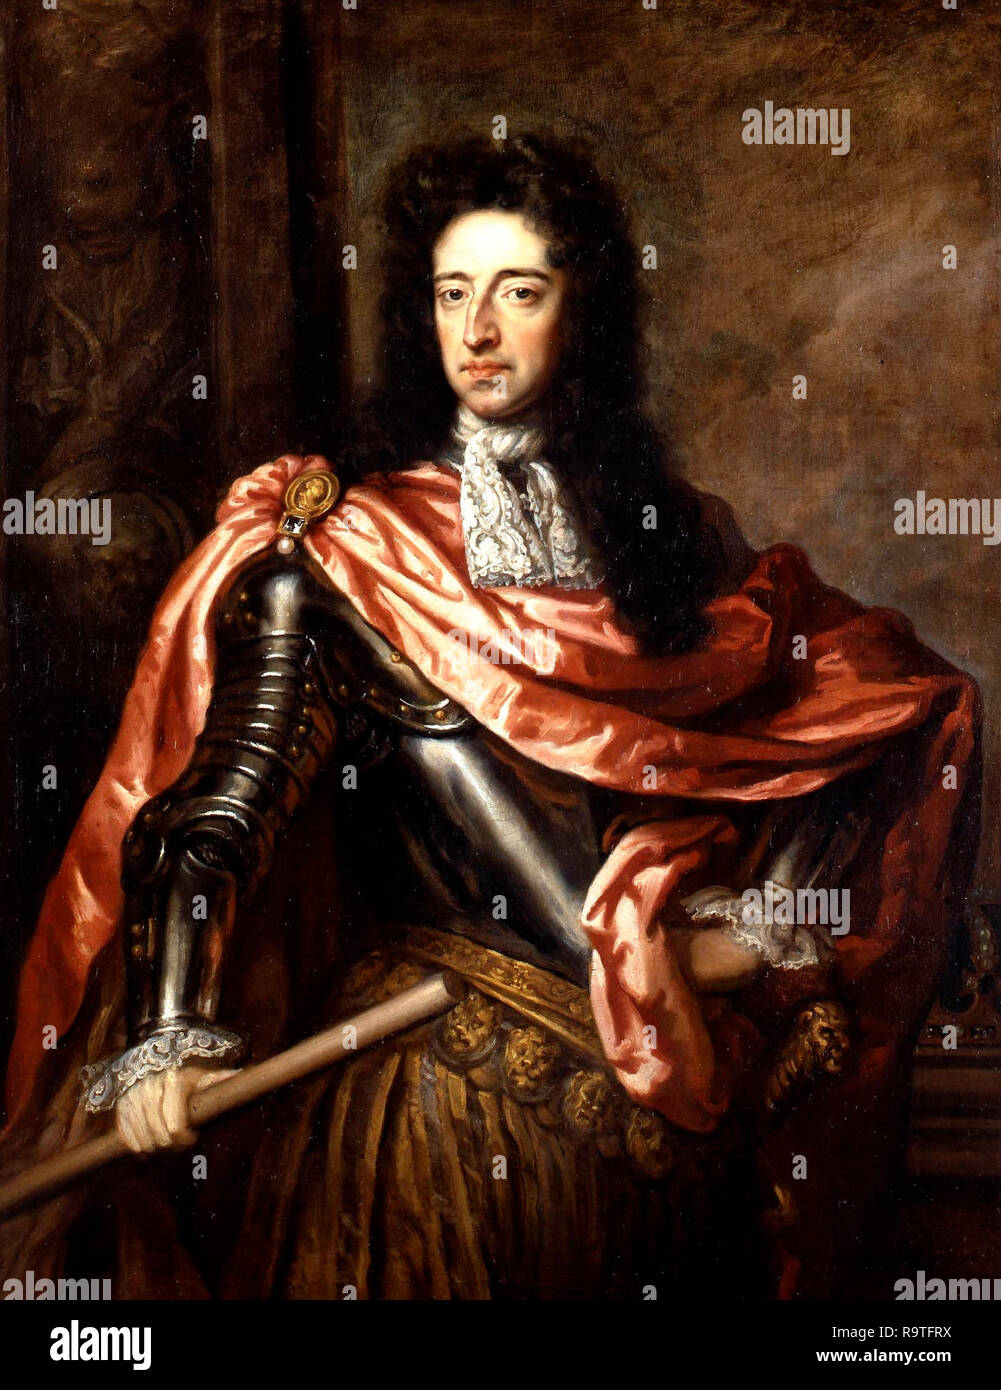 Porträt von König William III. (1650-1702) - Godfrey Kneller, circa 1680s Stockfoto